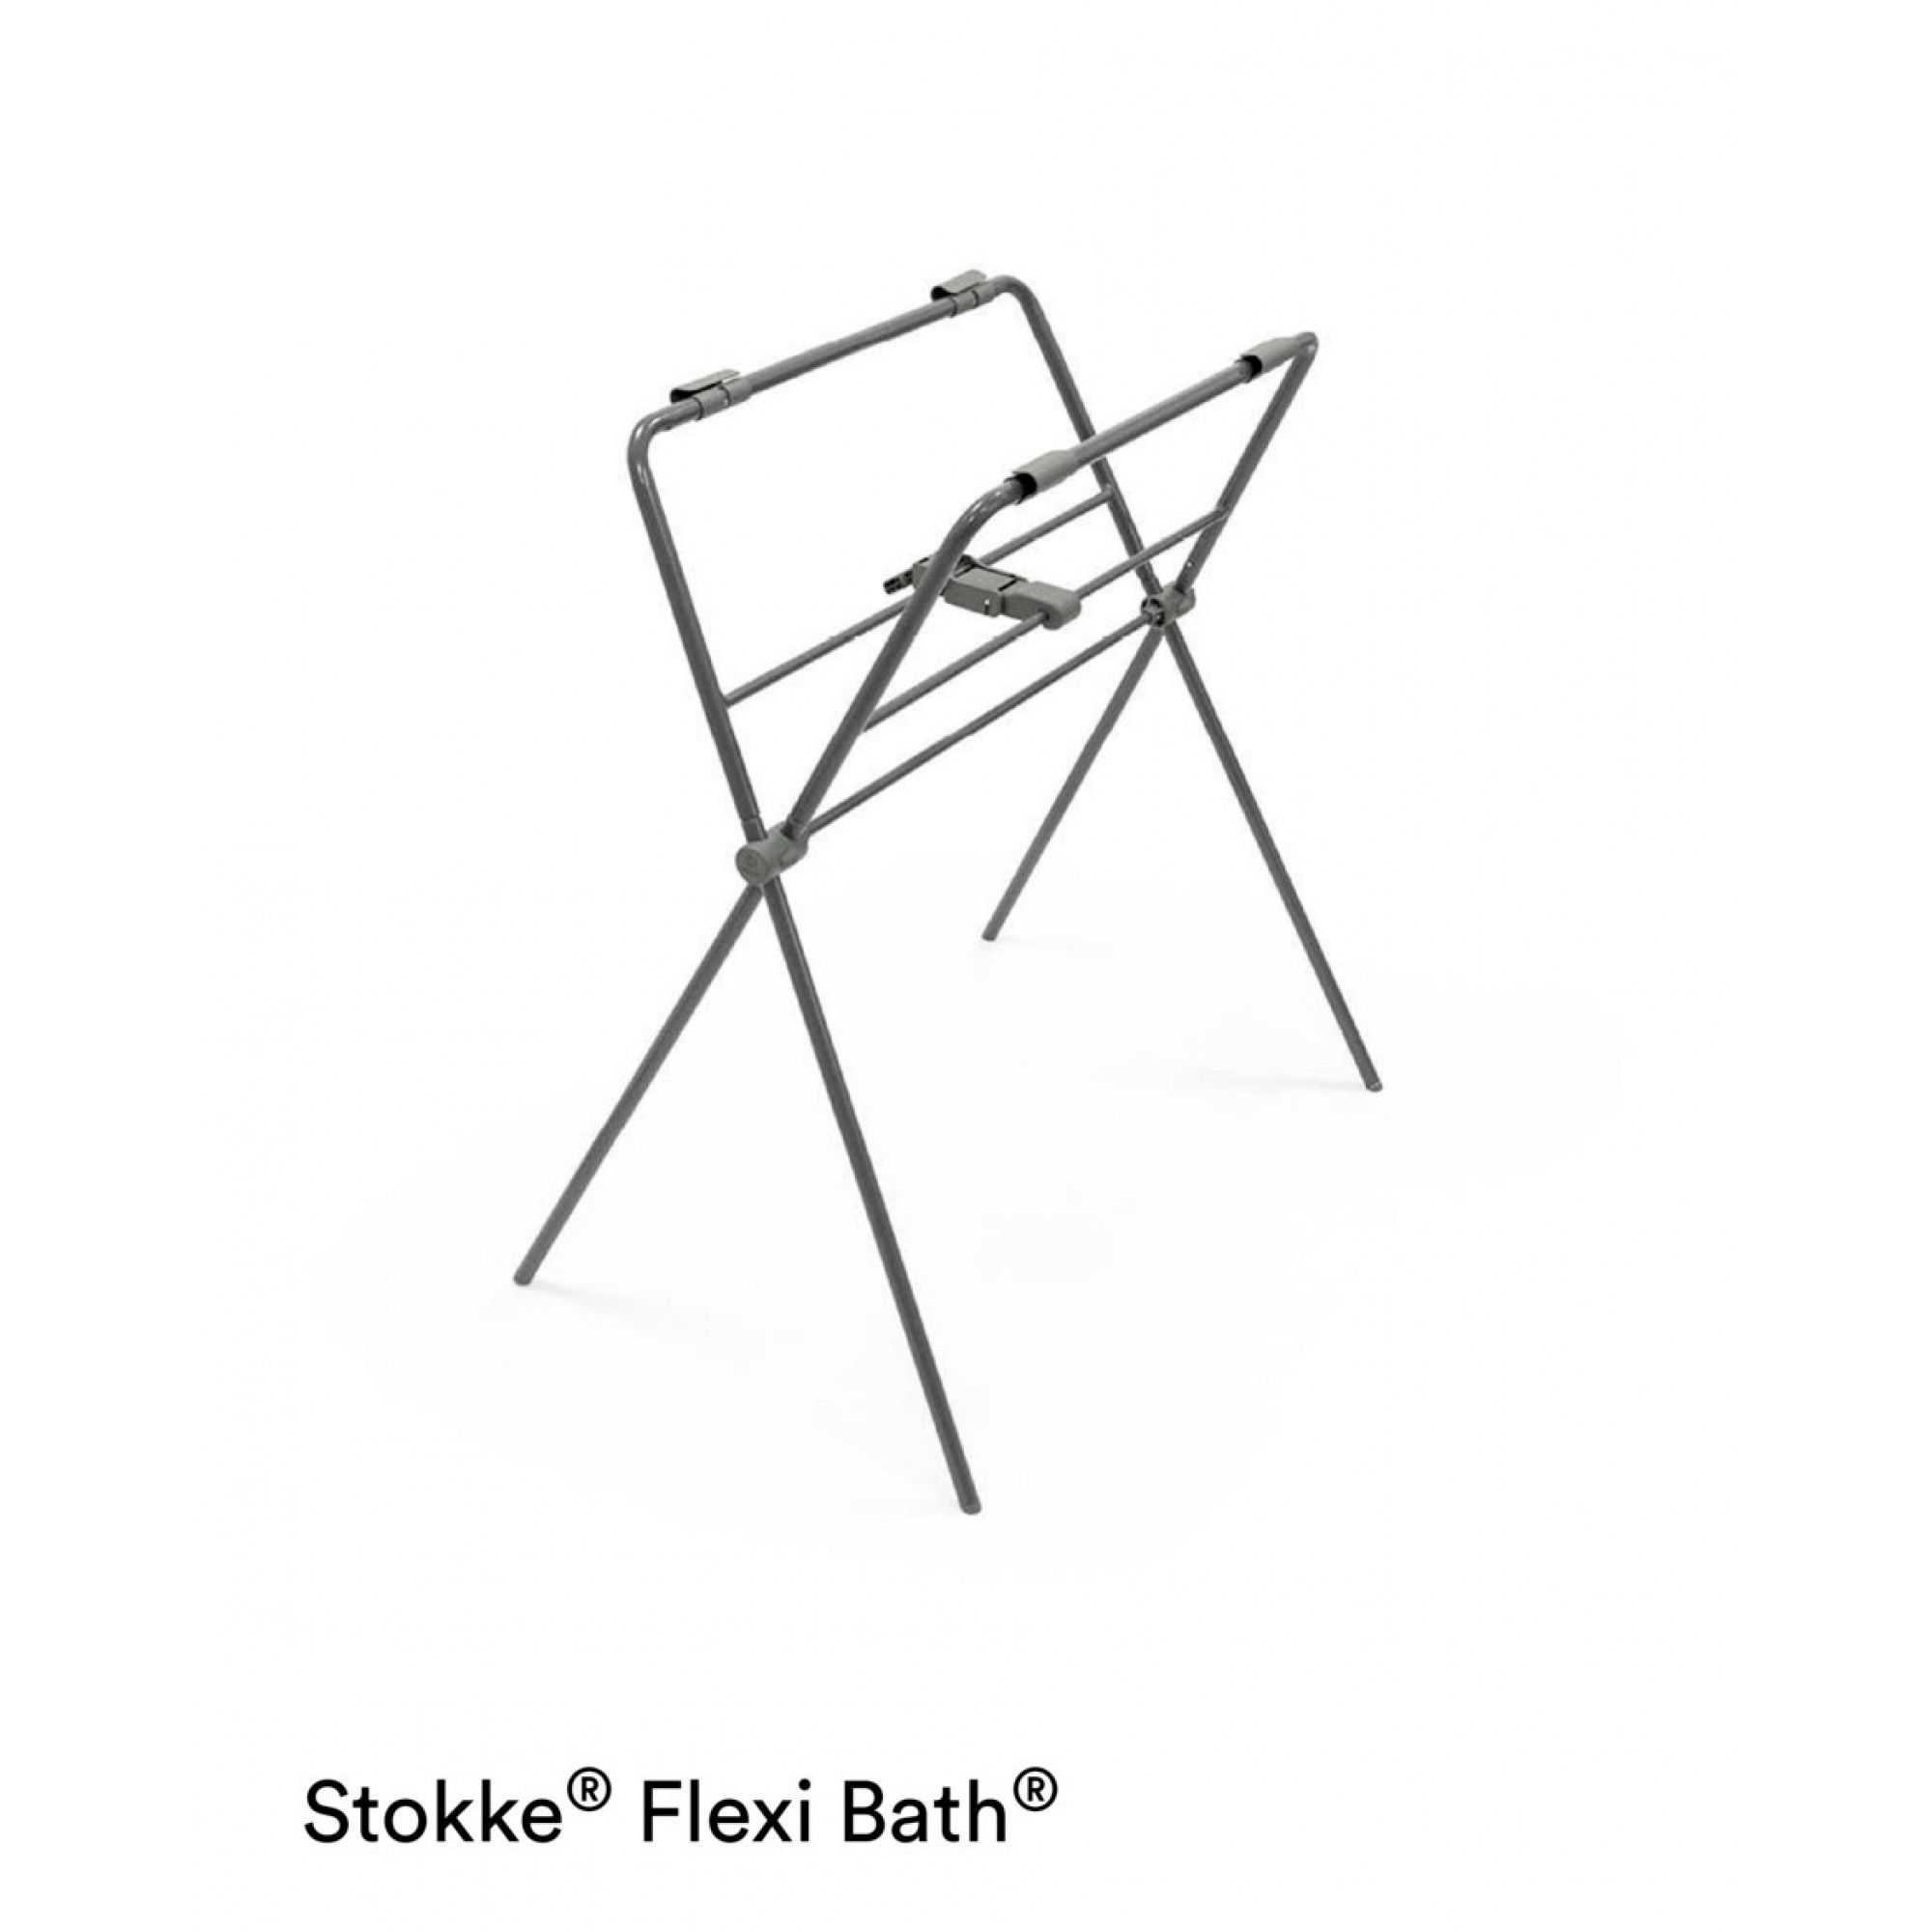 Stokke - Support baignoire pliante Flexi Bath 